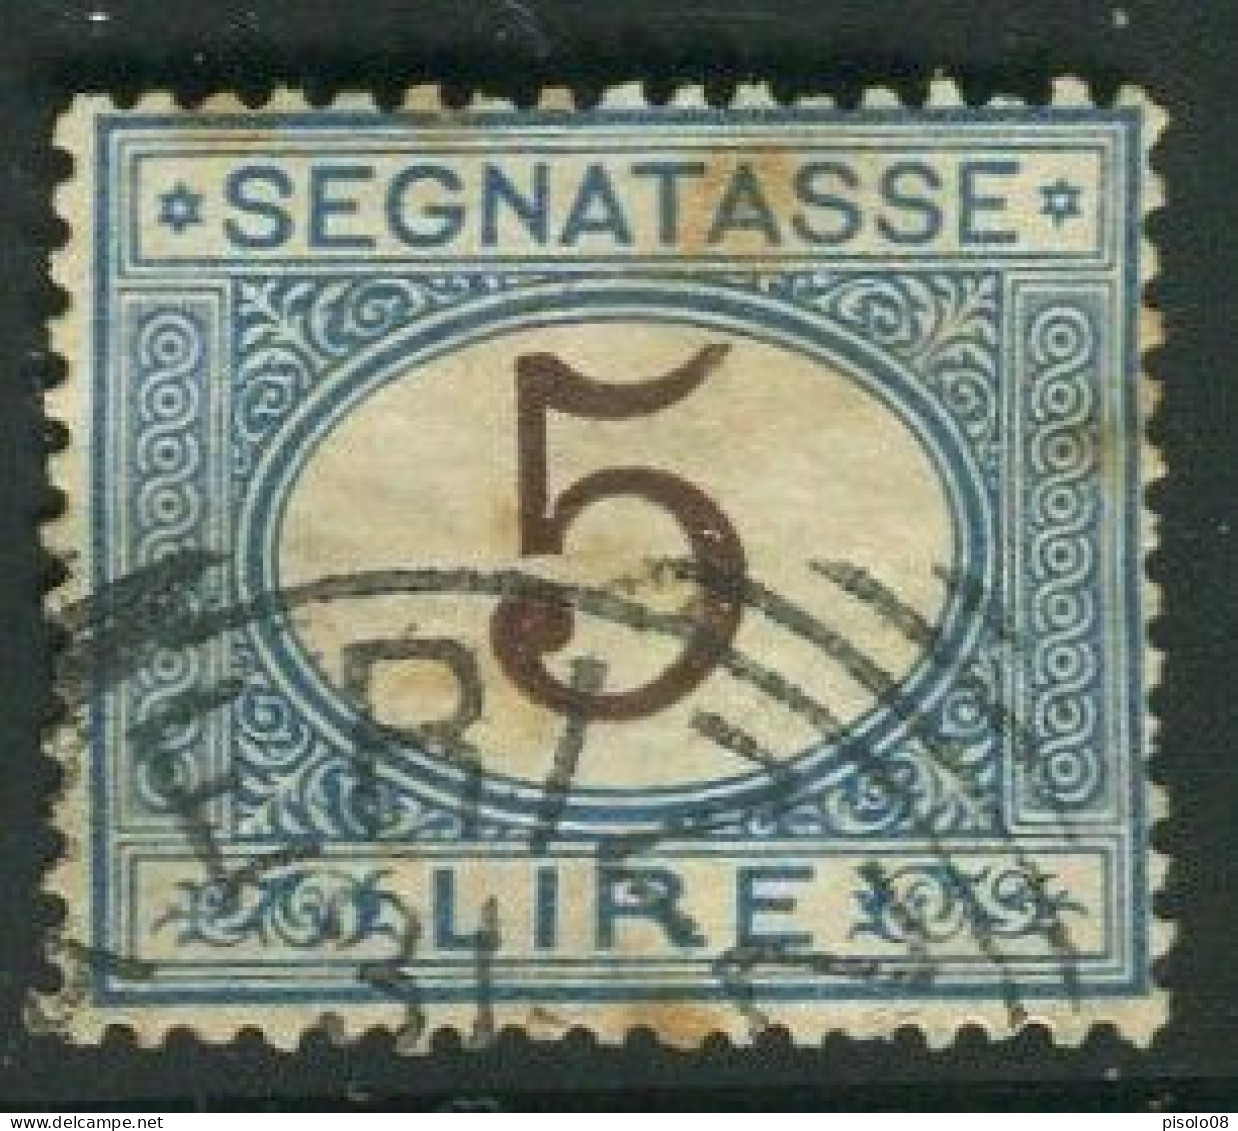 REGNO 1870-94 SEGNATASSE 5 LIRE USATO - Portomarken